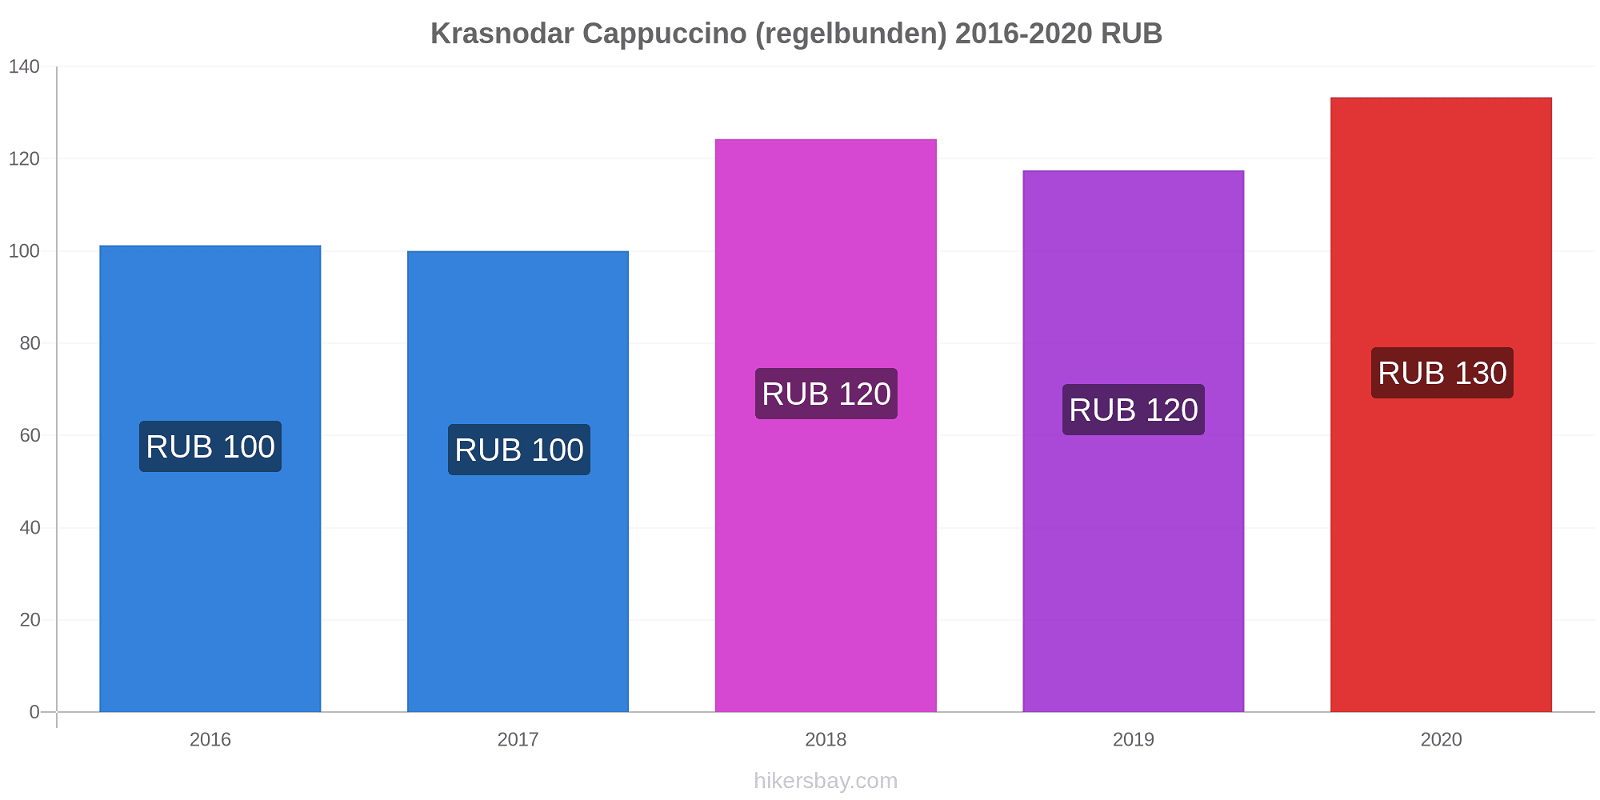 Krasnodar prisförändringar Cappuccino (regelbunden) hikersbay.com